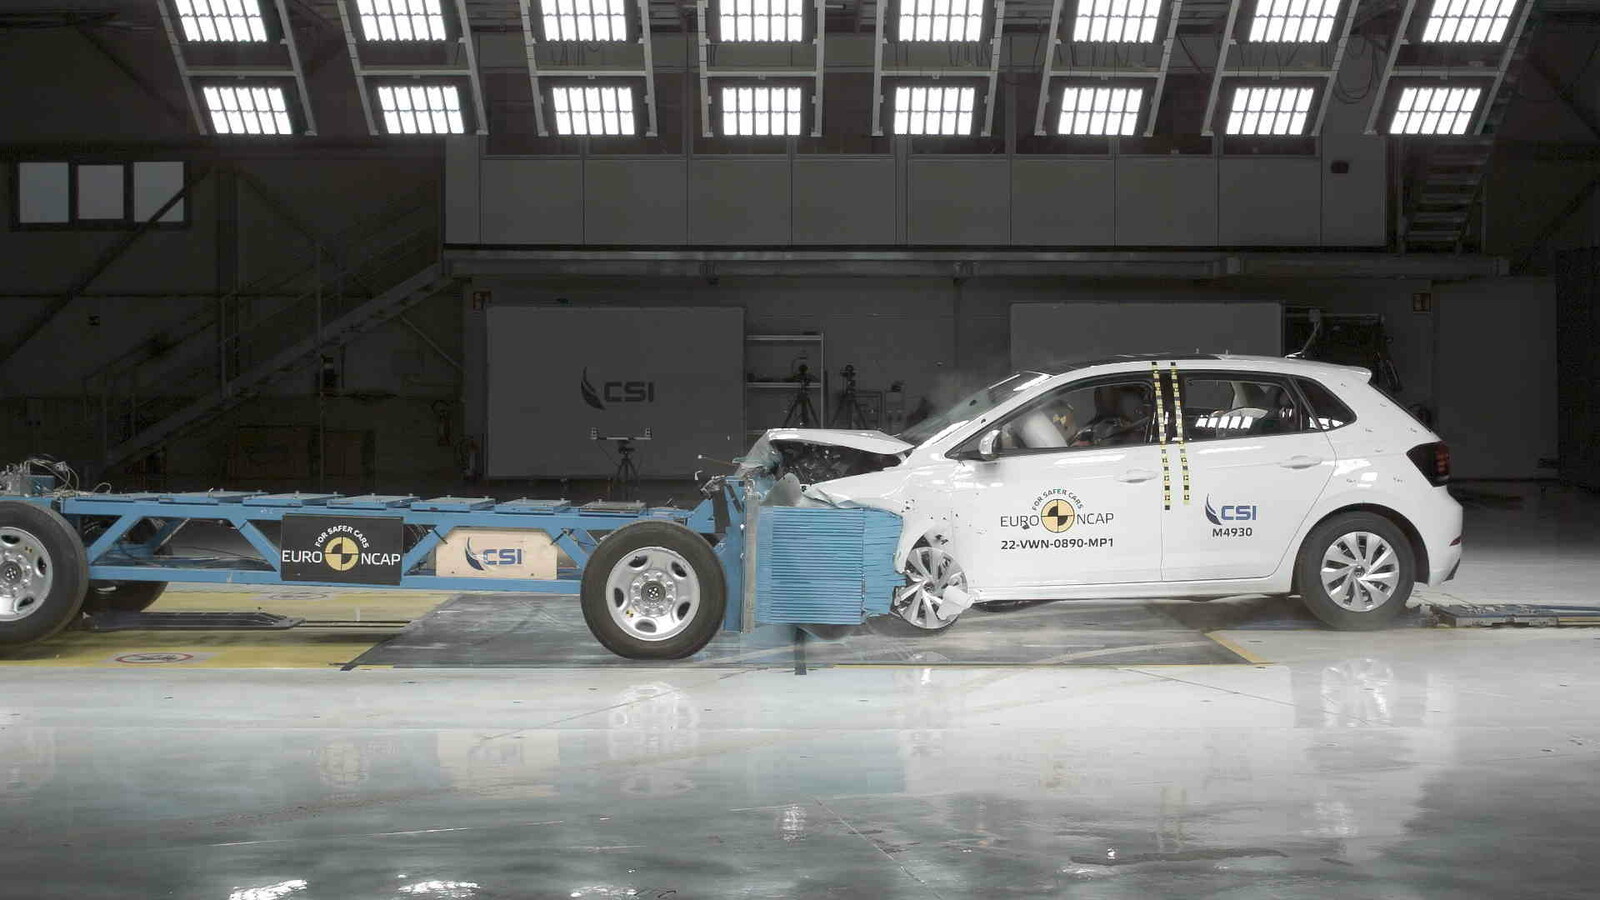 Dank neuer Mittelairbags bietet der VW Polo den vorderen Insassen einen besonders guten Unfallschutz.